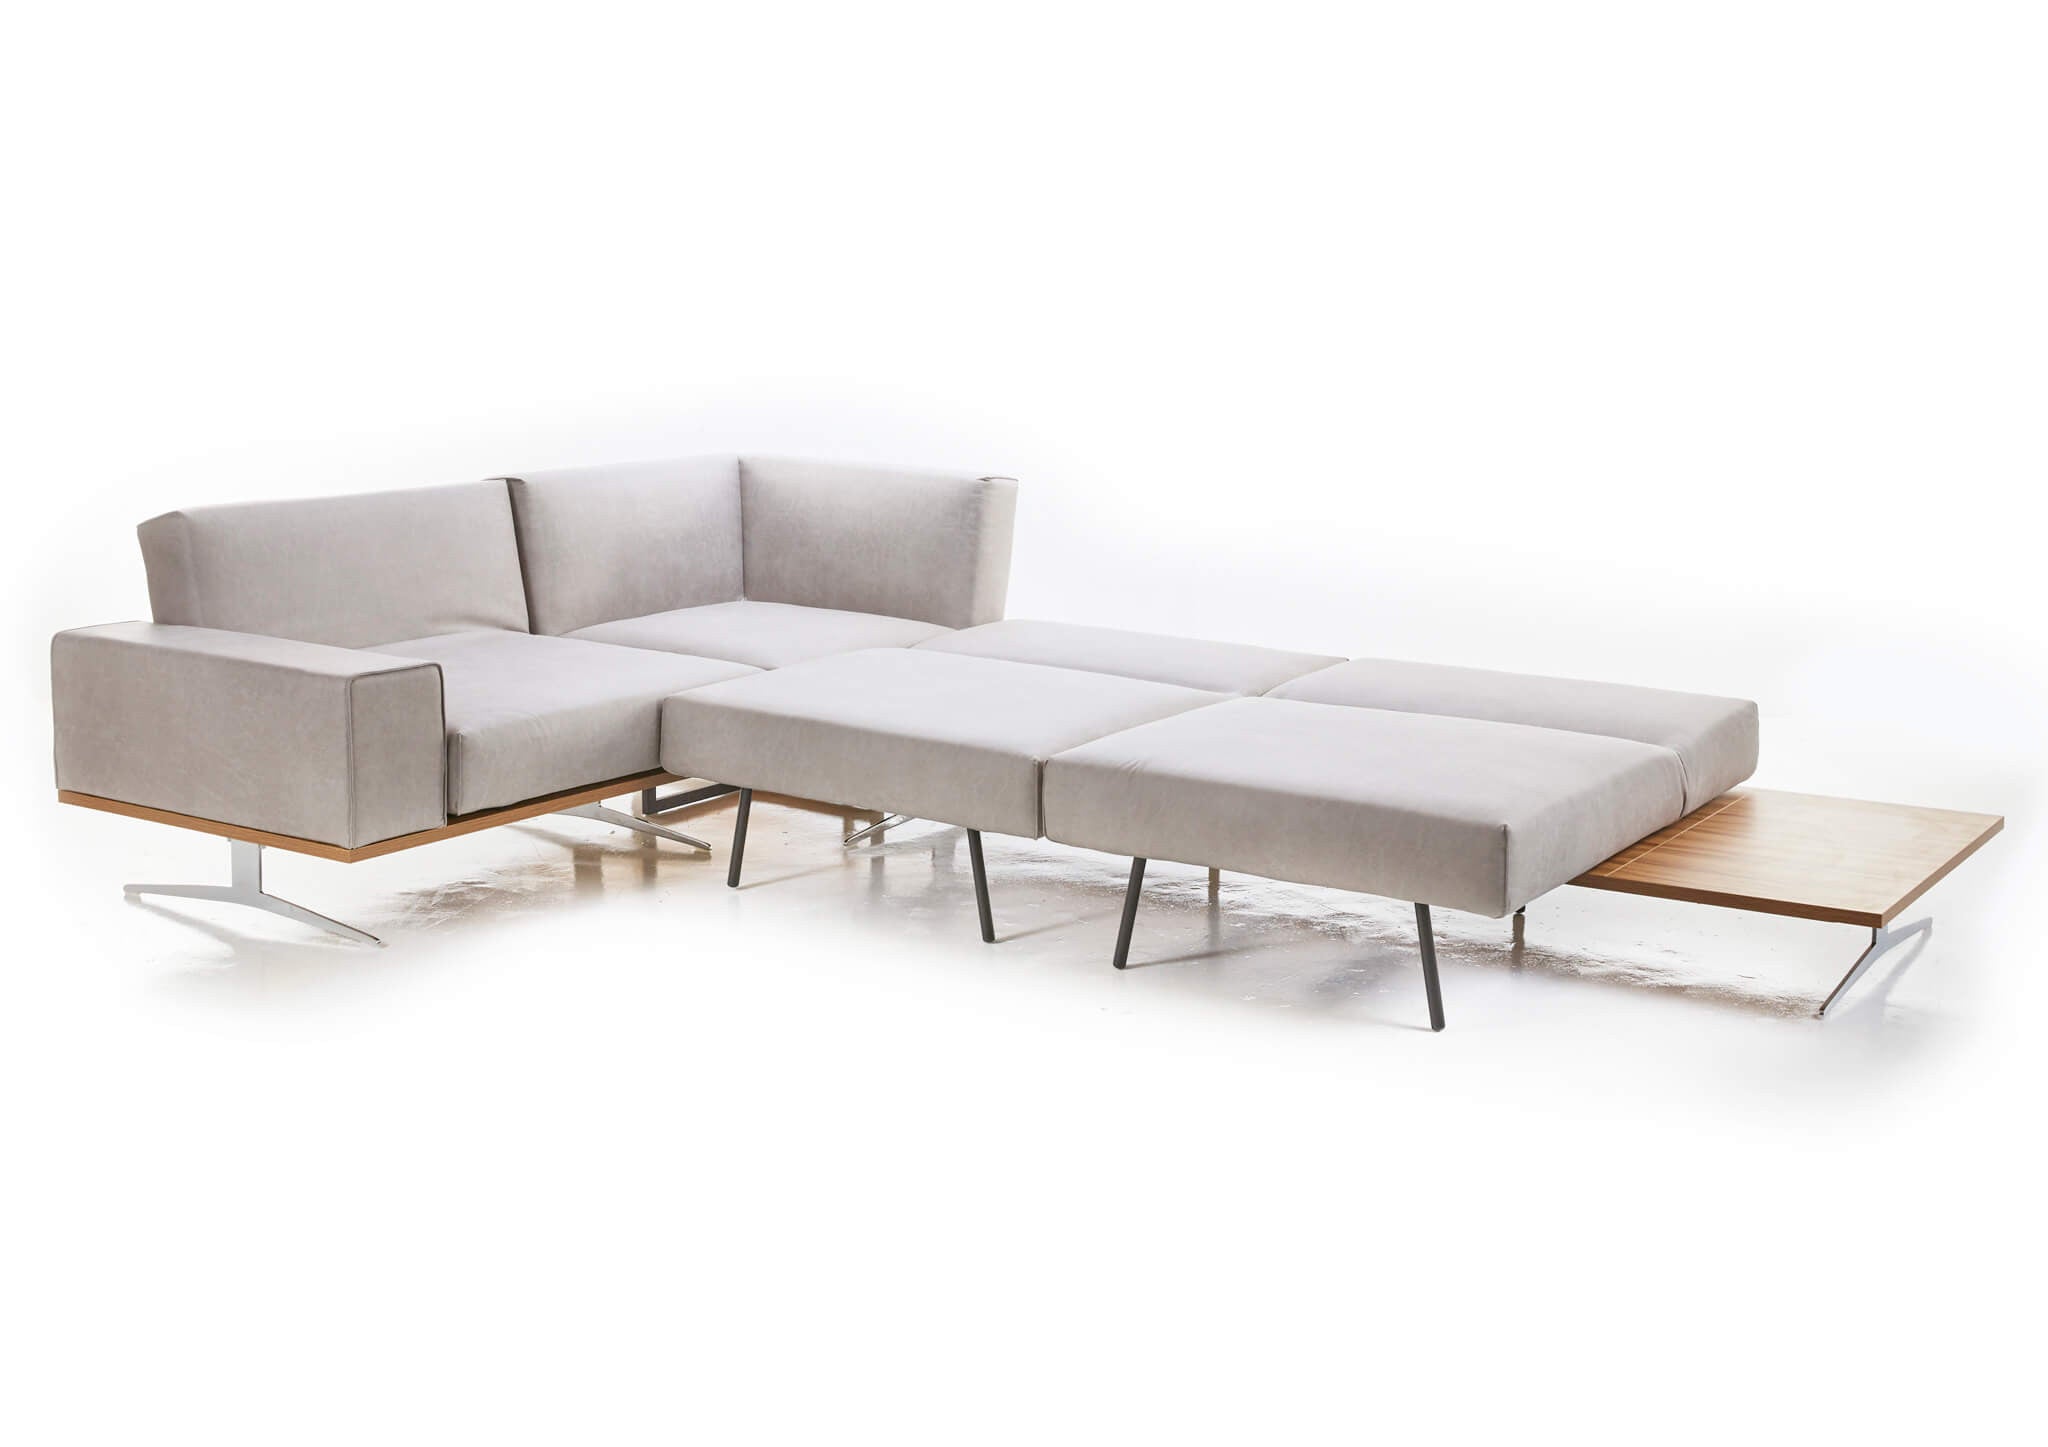 L Shape Modular Sofa Bed Sets More Than Just A Sofa